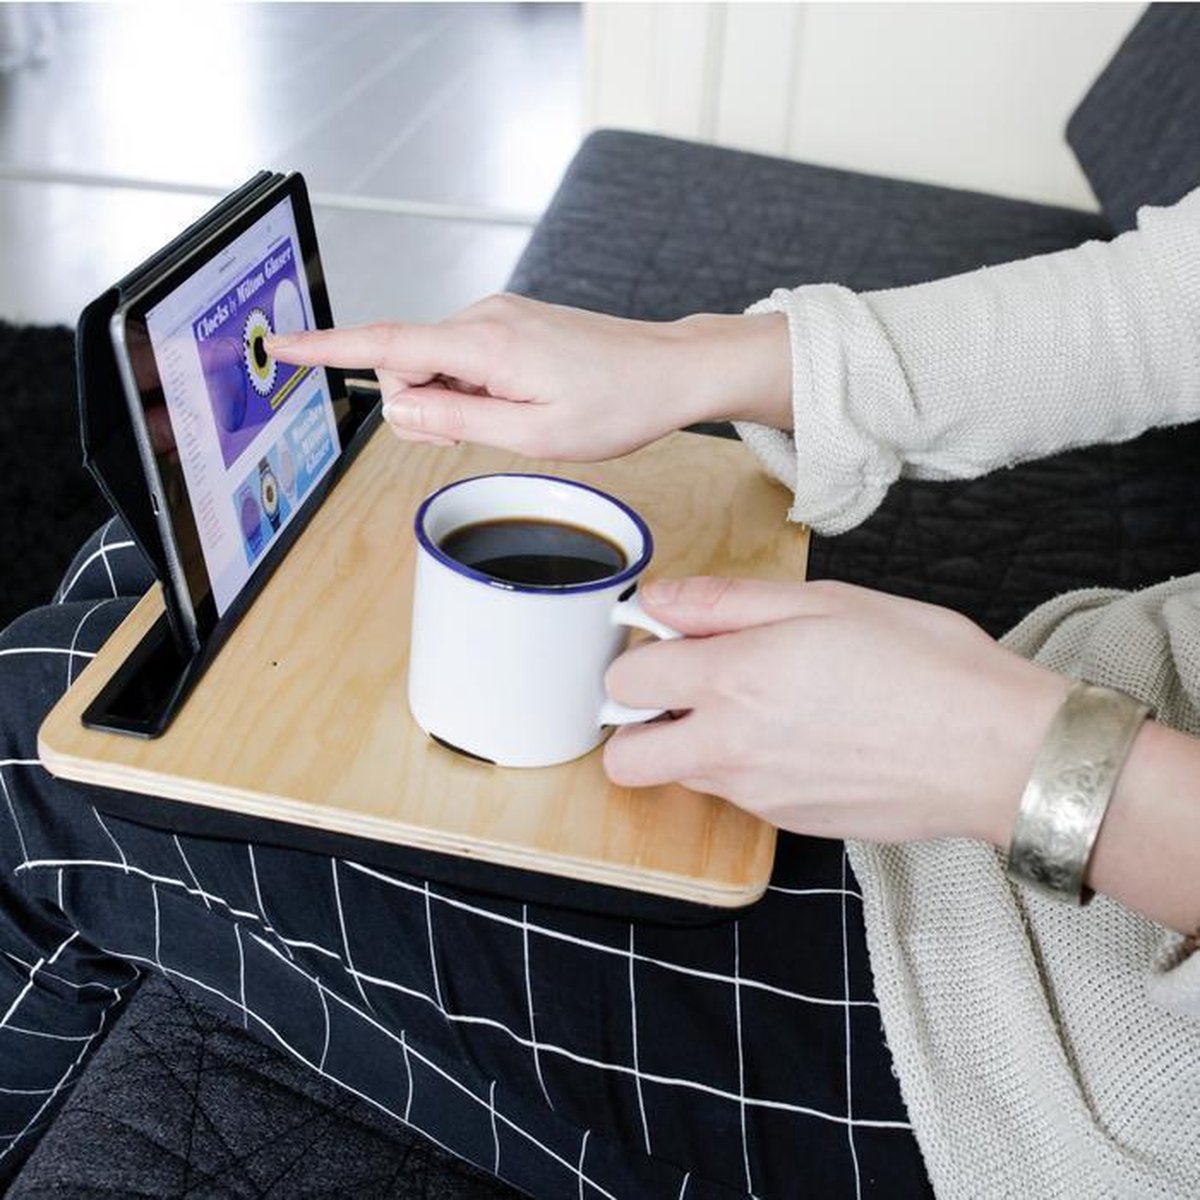 KIKKERLAND iBed Lap Desk and Tablet or NoteBook Holder - Large - Wood